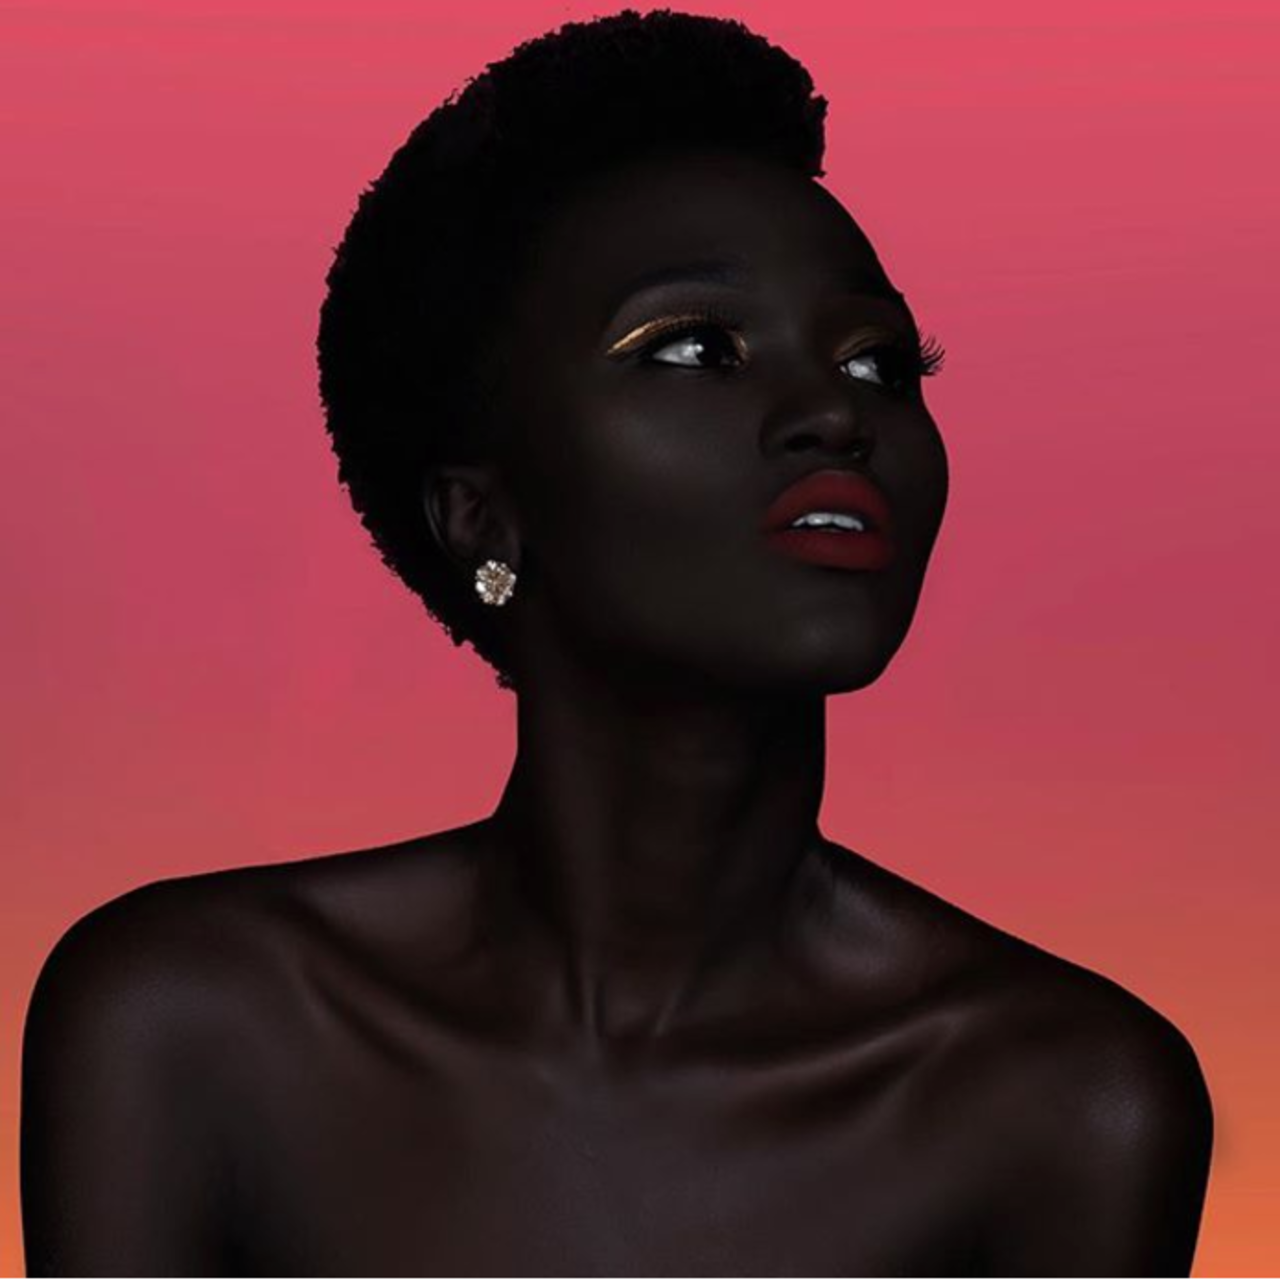 Очень чернокожий. Няким Гатвеч. Королева тьмы - Ньяким Гатвех - модель из Южного Судана. Няким Гатвех - "Королева тьмы" из Южного Судана. Ньяким Гатвеч модель.